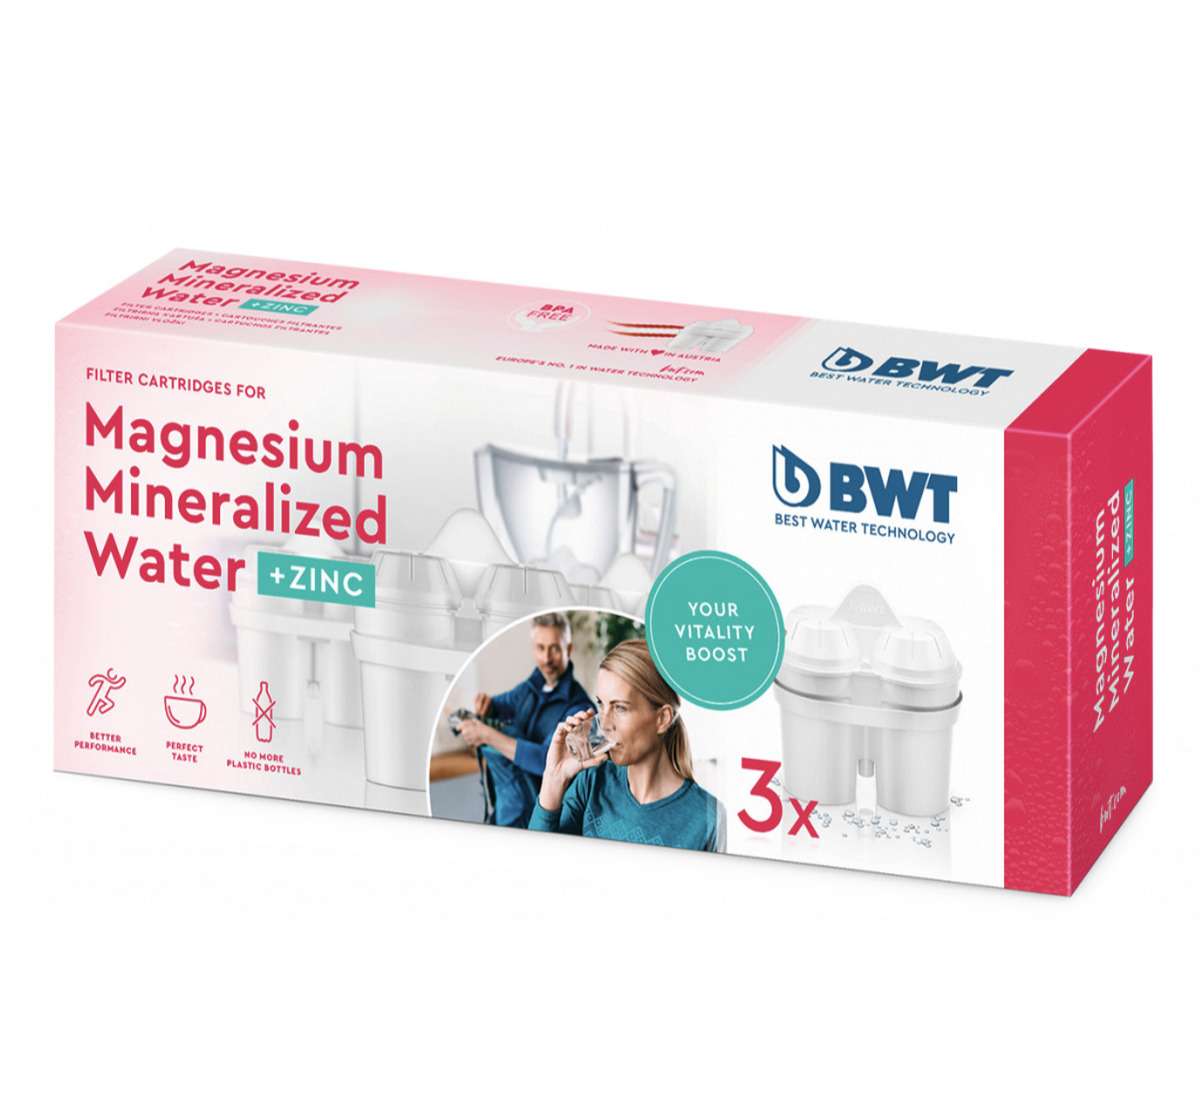 Zinc water. BWT картридж обогащение магнием. BWT комплект картриджей обогащение магнием (3+1). Magnesium Mineralized Water +Zink картридж BWT. BWT Protector Mini с/r с редуктором 1/2.